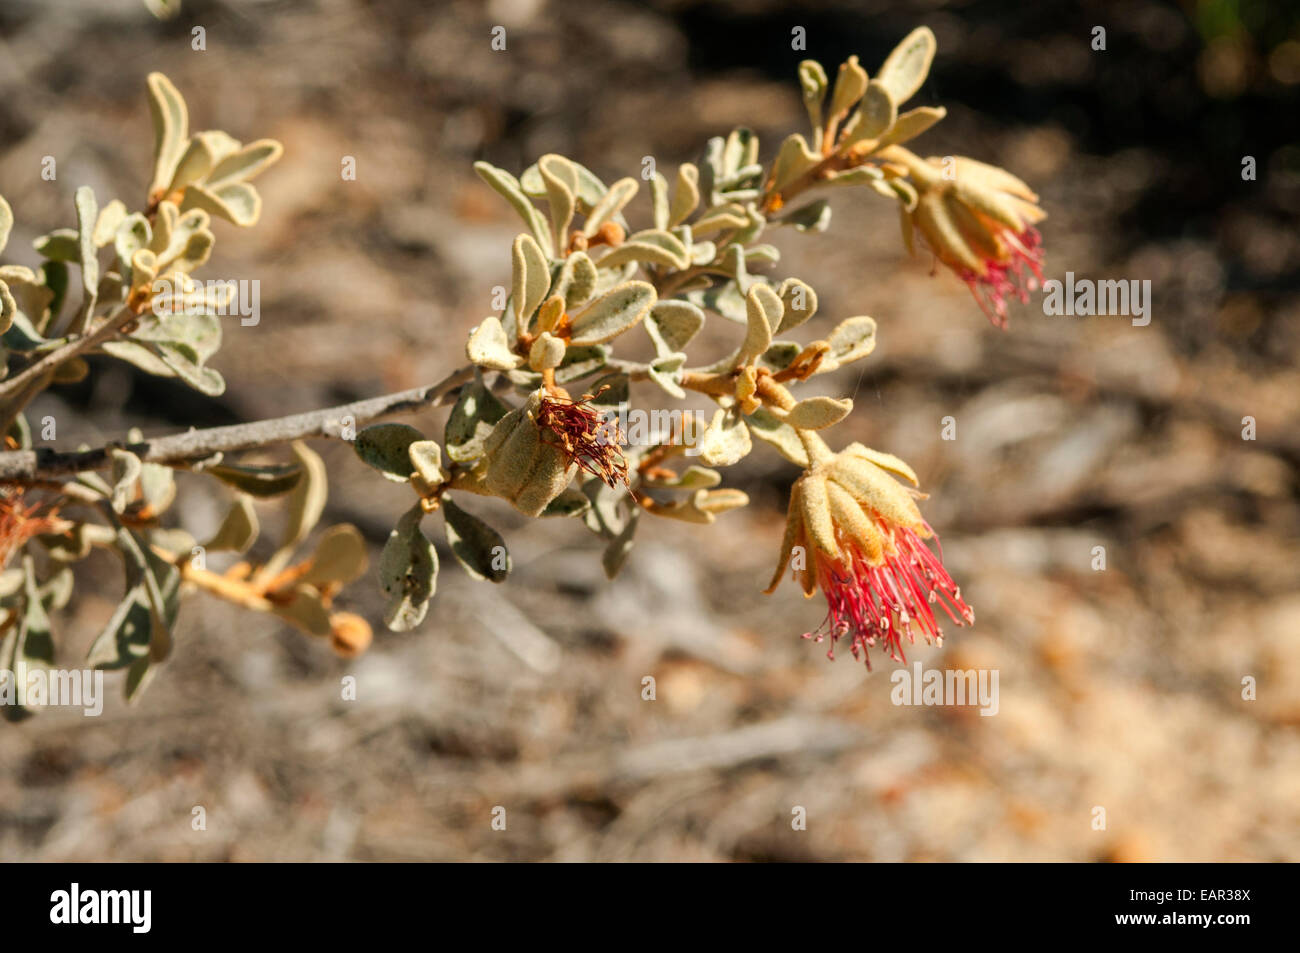 Diplolaena mollis, Furry Diplolaena in Kalbarri NP, WA, Australia Stock Photo